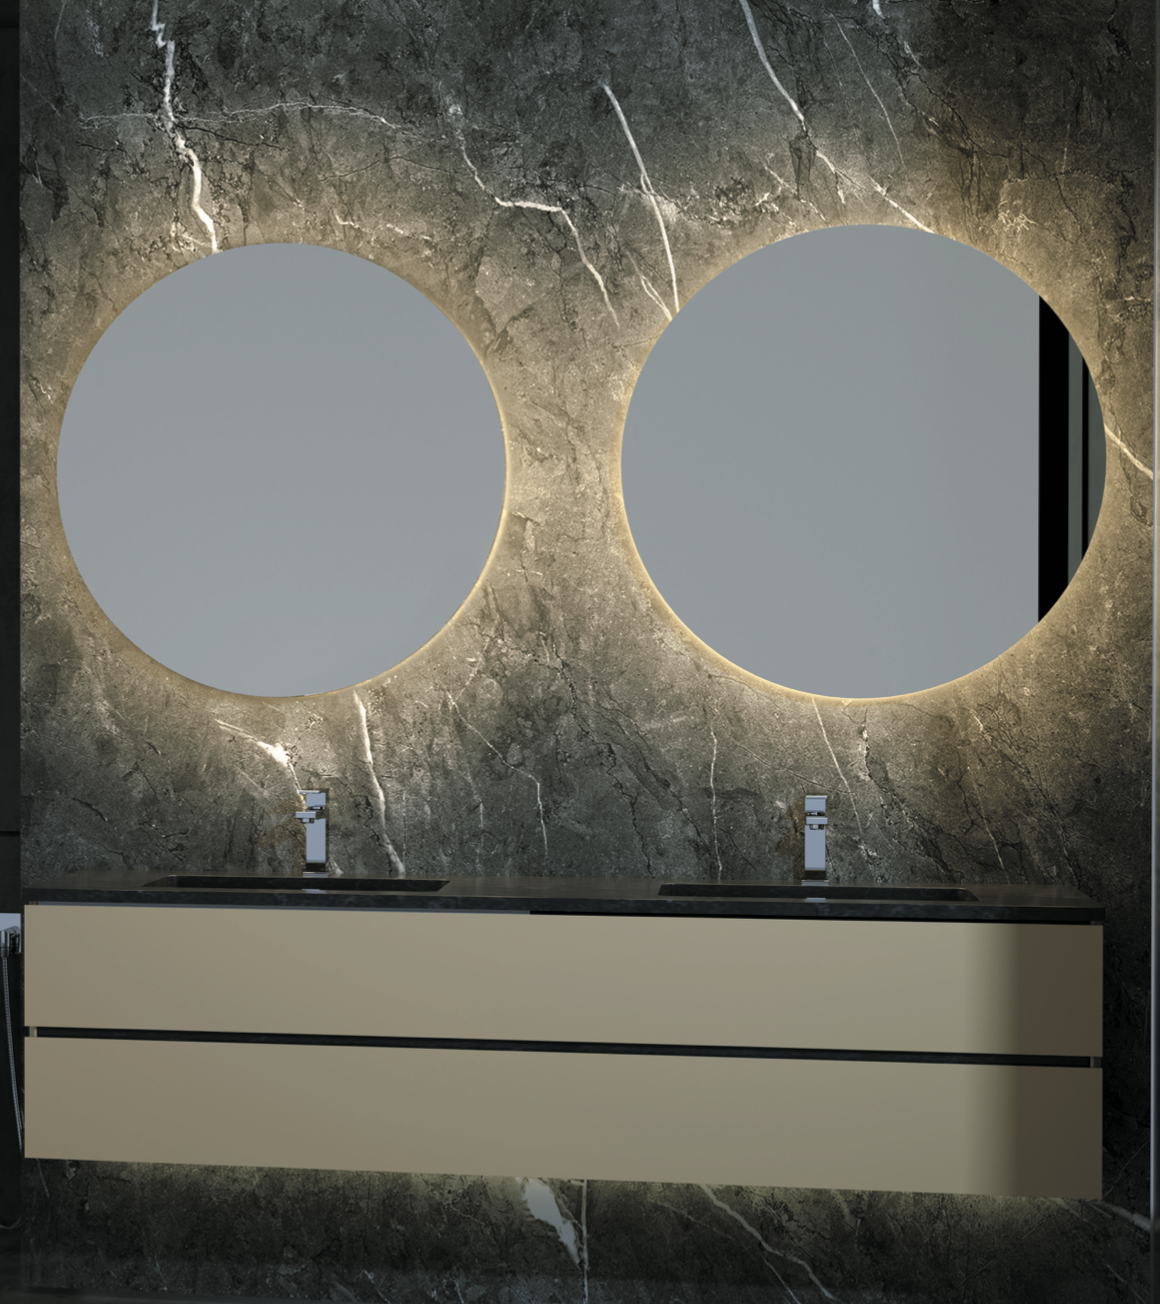 Espejo baño redondo retroiluminado Led Oporto de Ledimex